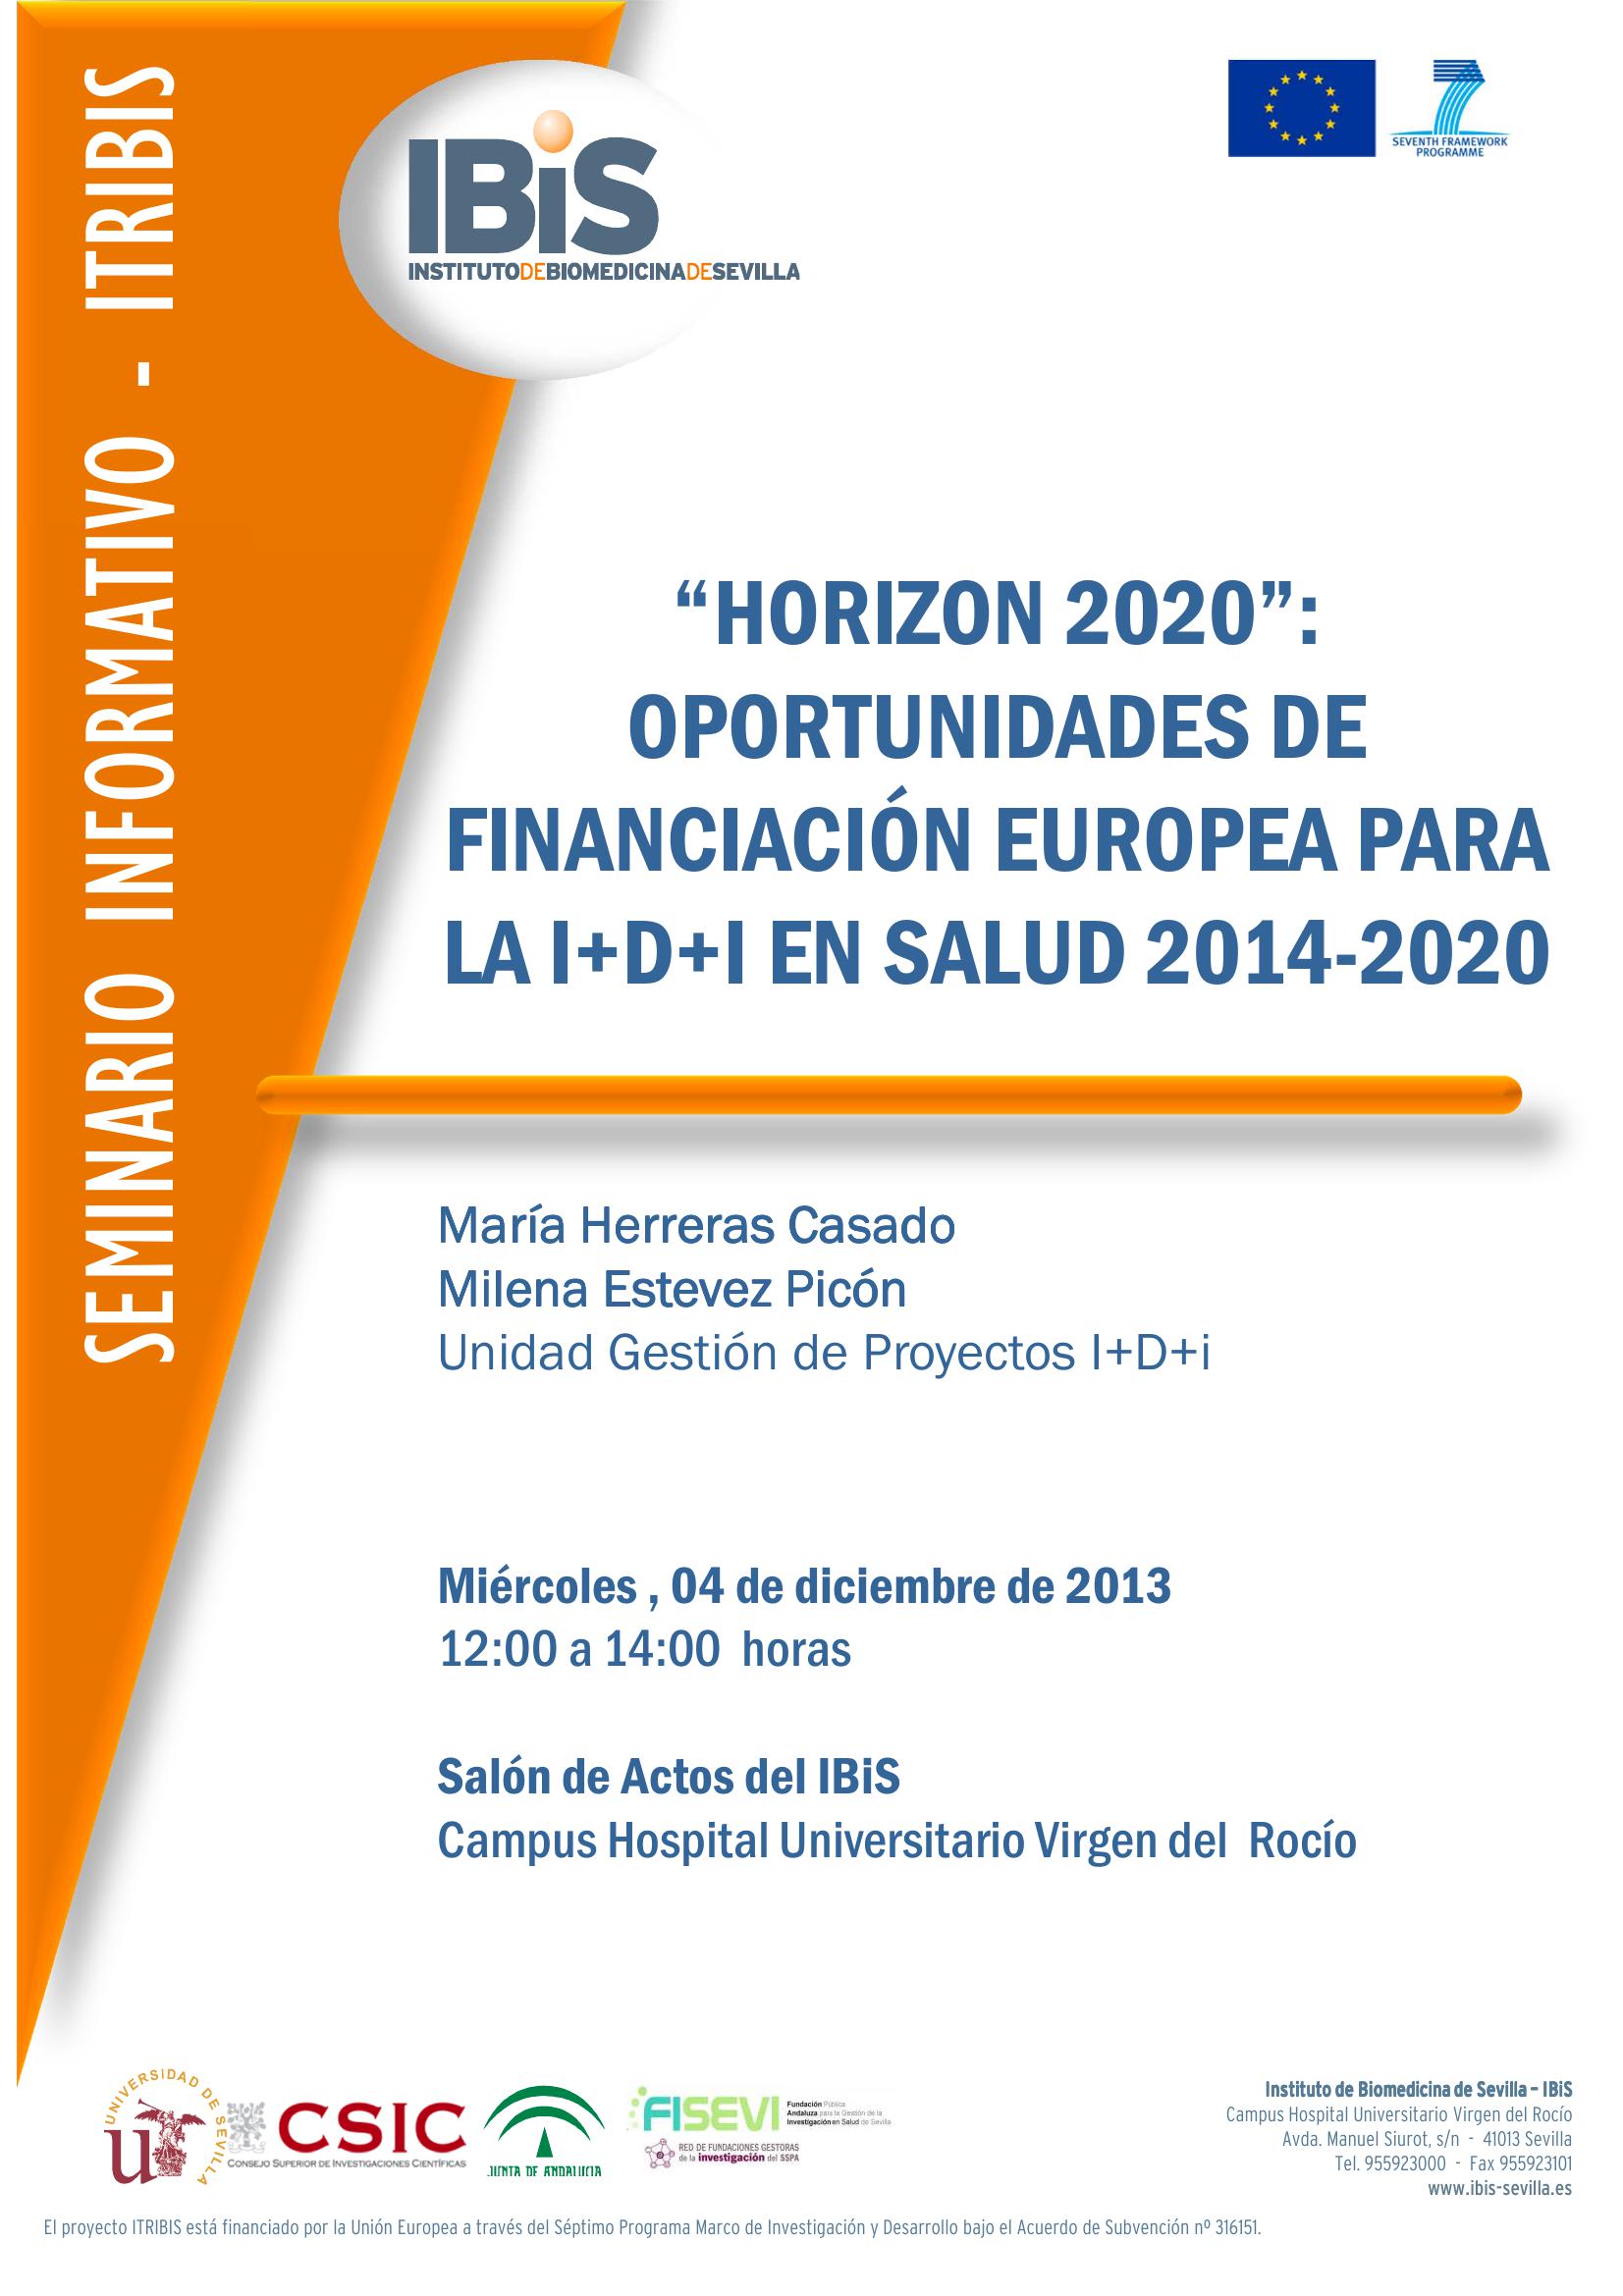 Poster: “HORIZON 2020”: OPORTUNIDADES DE FINANCIACIÓN EUROPEA PARA LA I+D+I EN SALUD 2014-2020